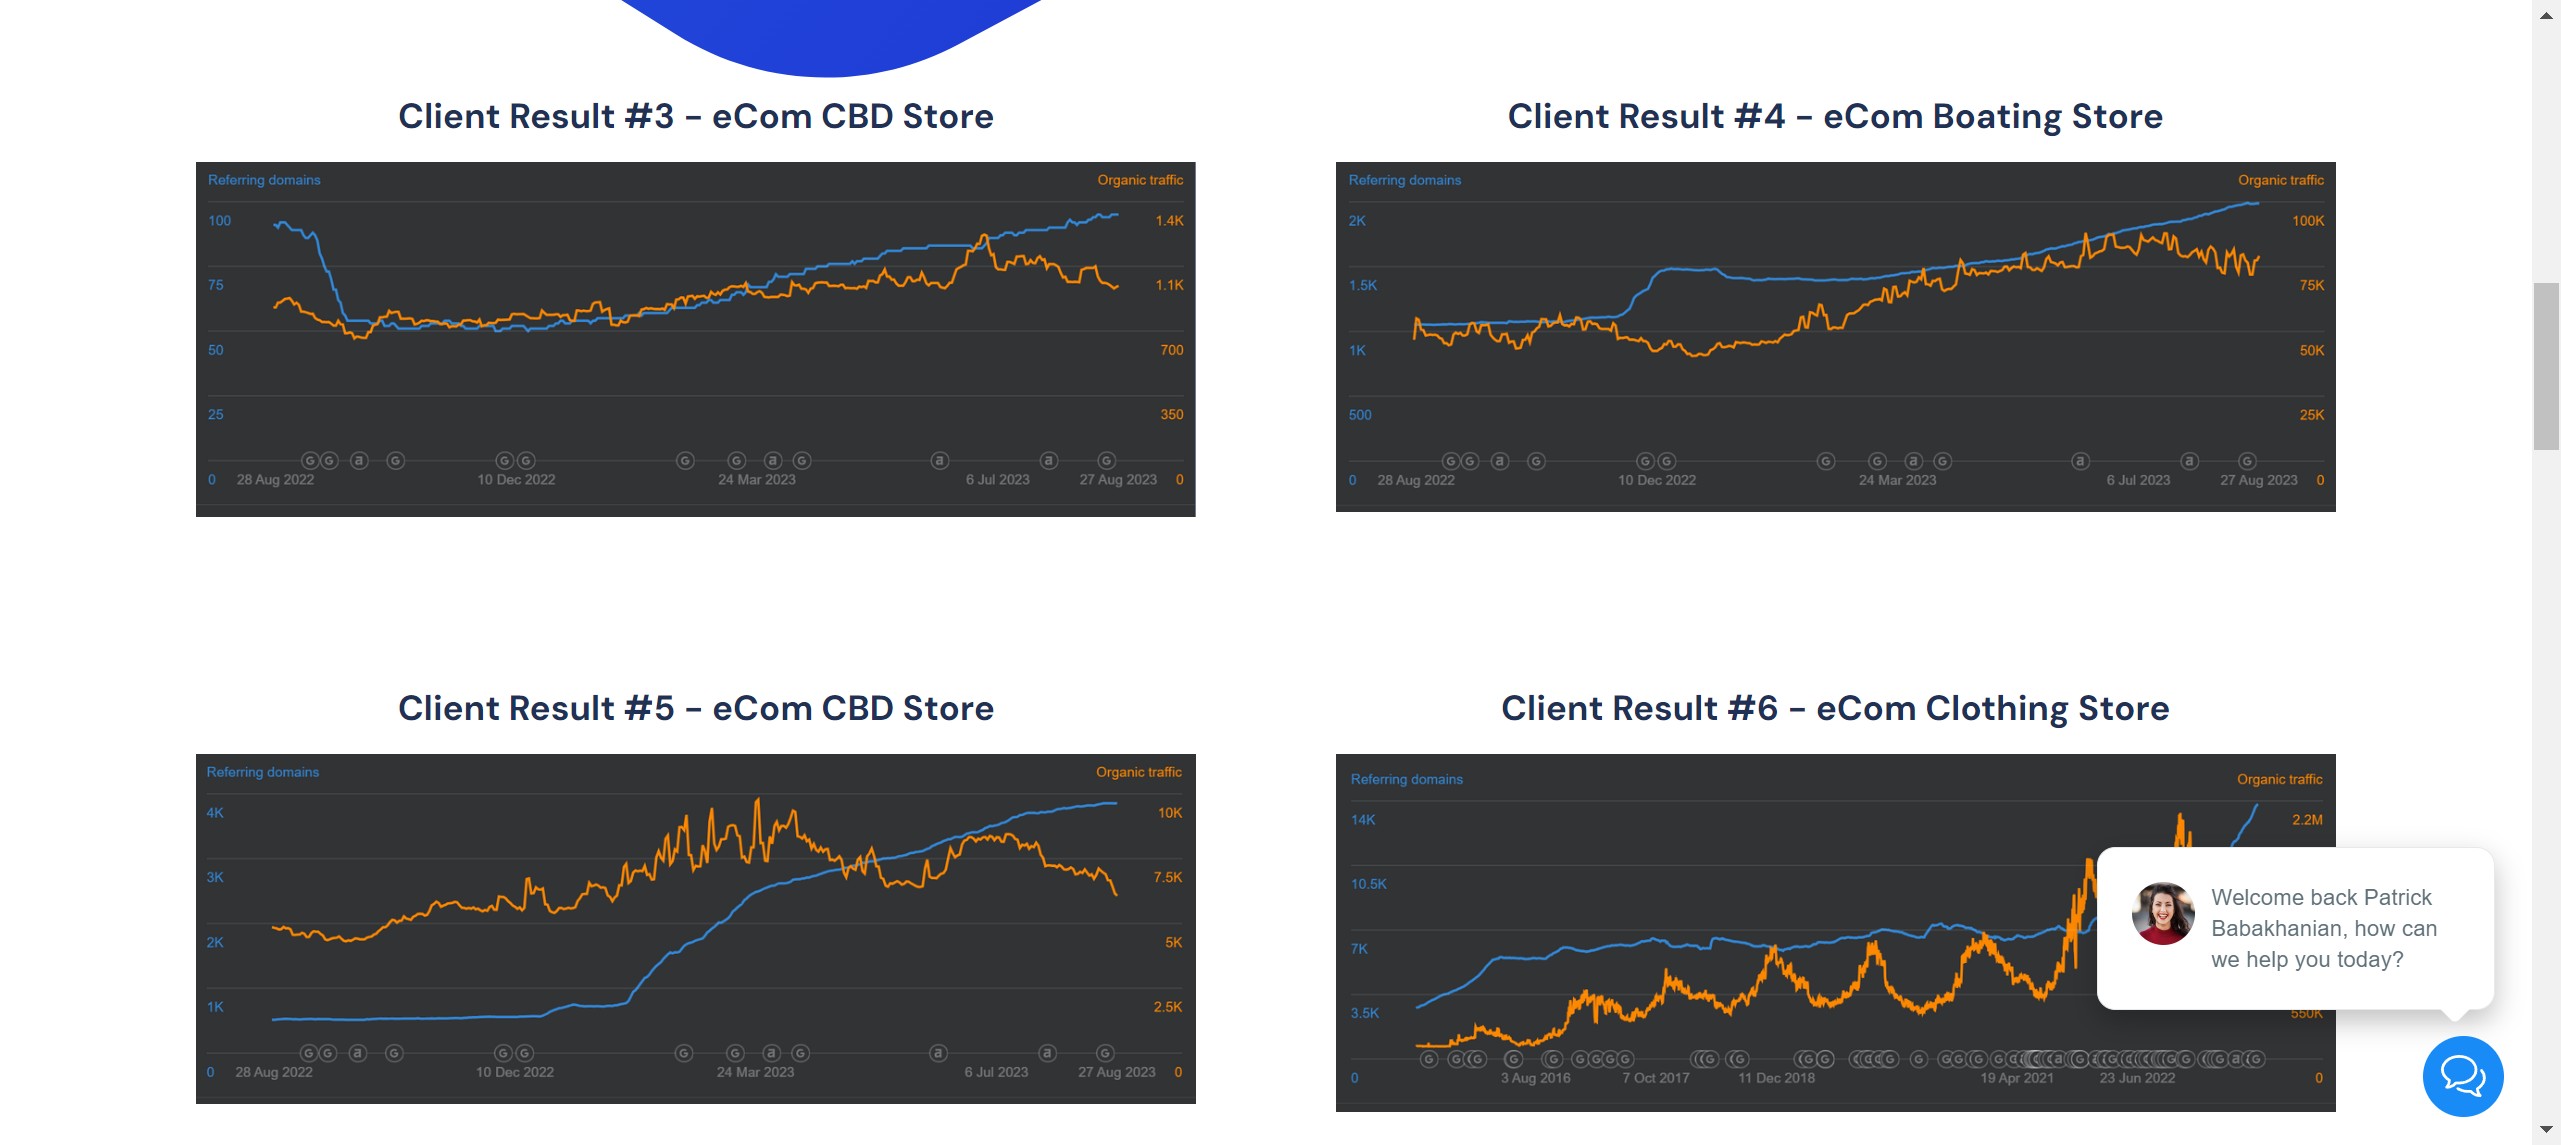 Click on "Client Result #3 - eCom CBD Store"